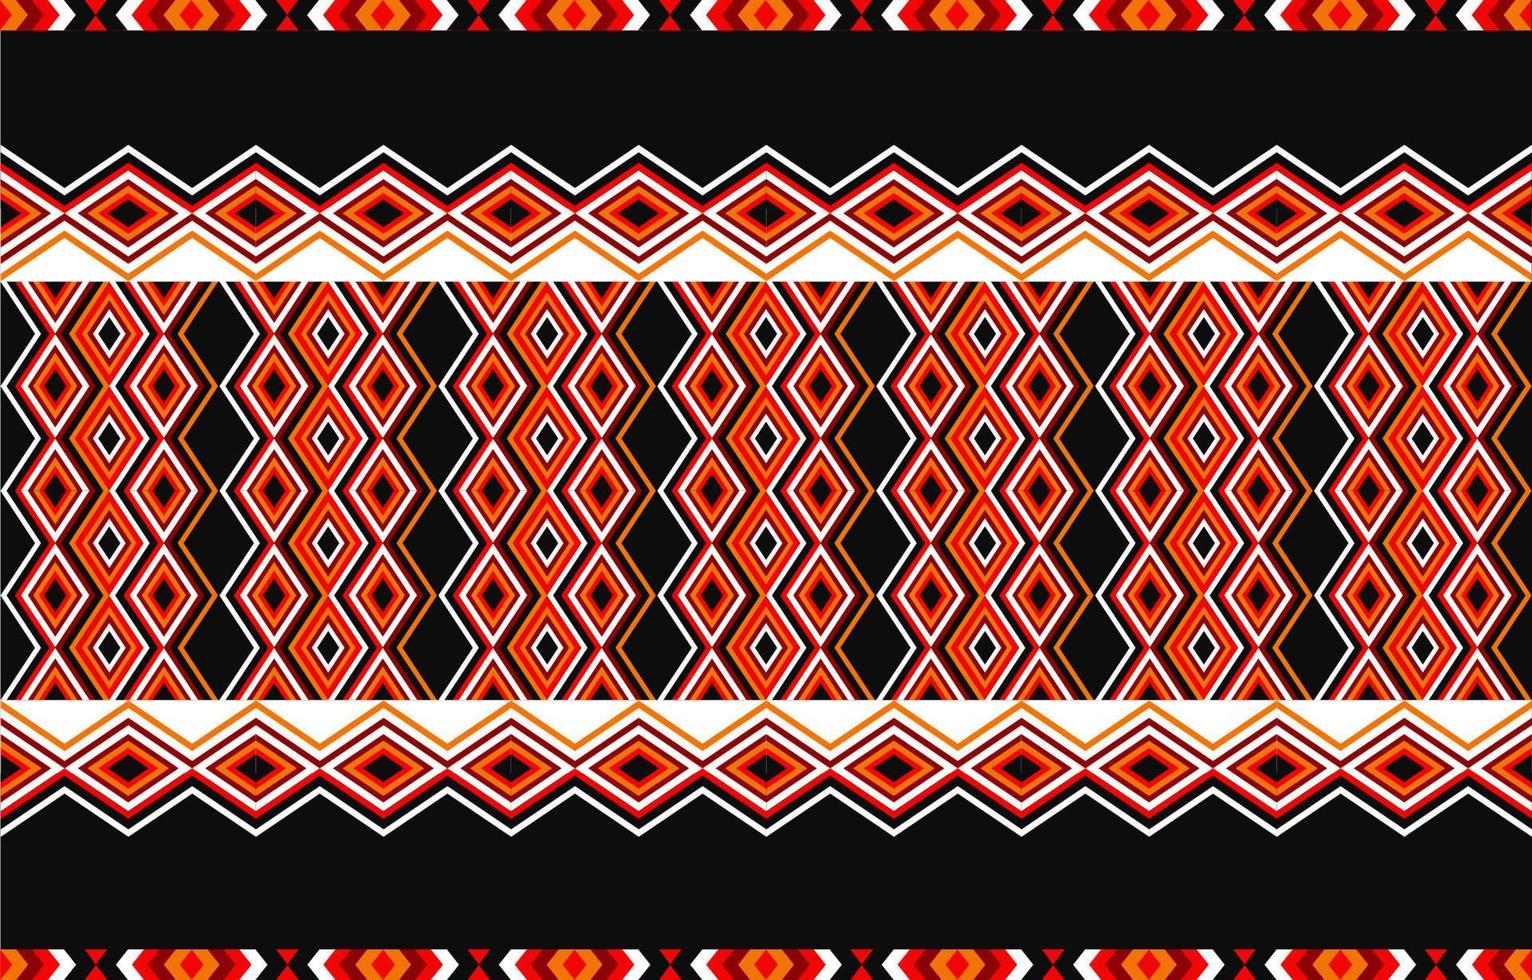 Amerikaanse tribal etnische patroon traditioneel ontwerp voor tapijt, behang, inwikkeling, batik, stof, gordijn, achtergrond, kleding, vector illustratie borduurstijl.